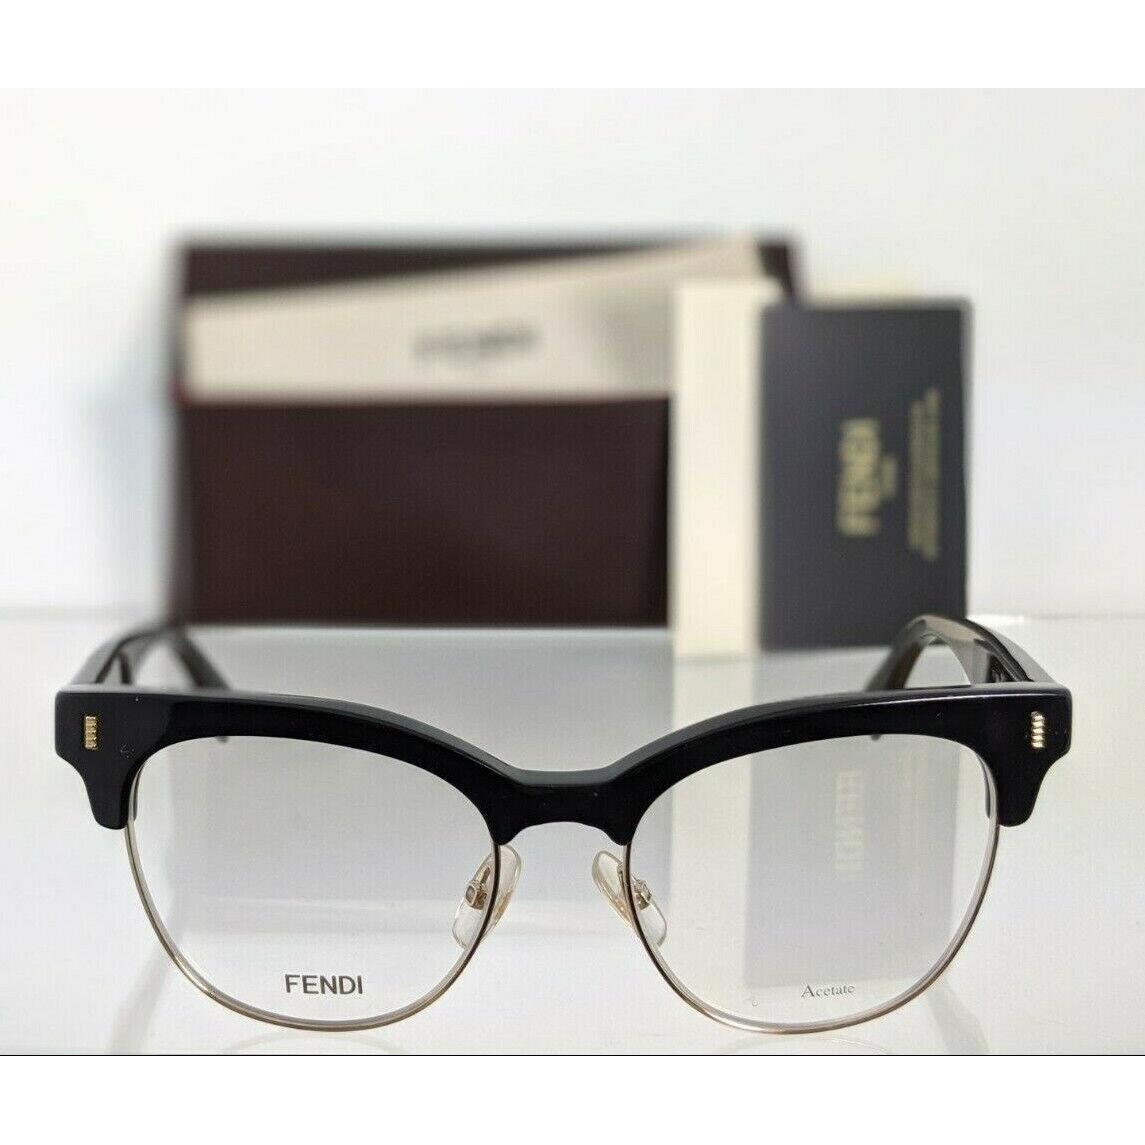 Fendi eyeglasses  - Black & Gold Frame, Clear Lens 2